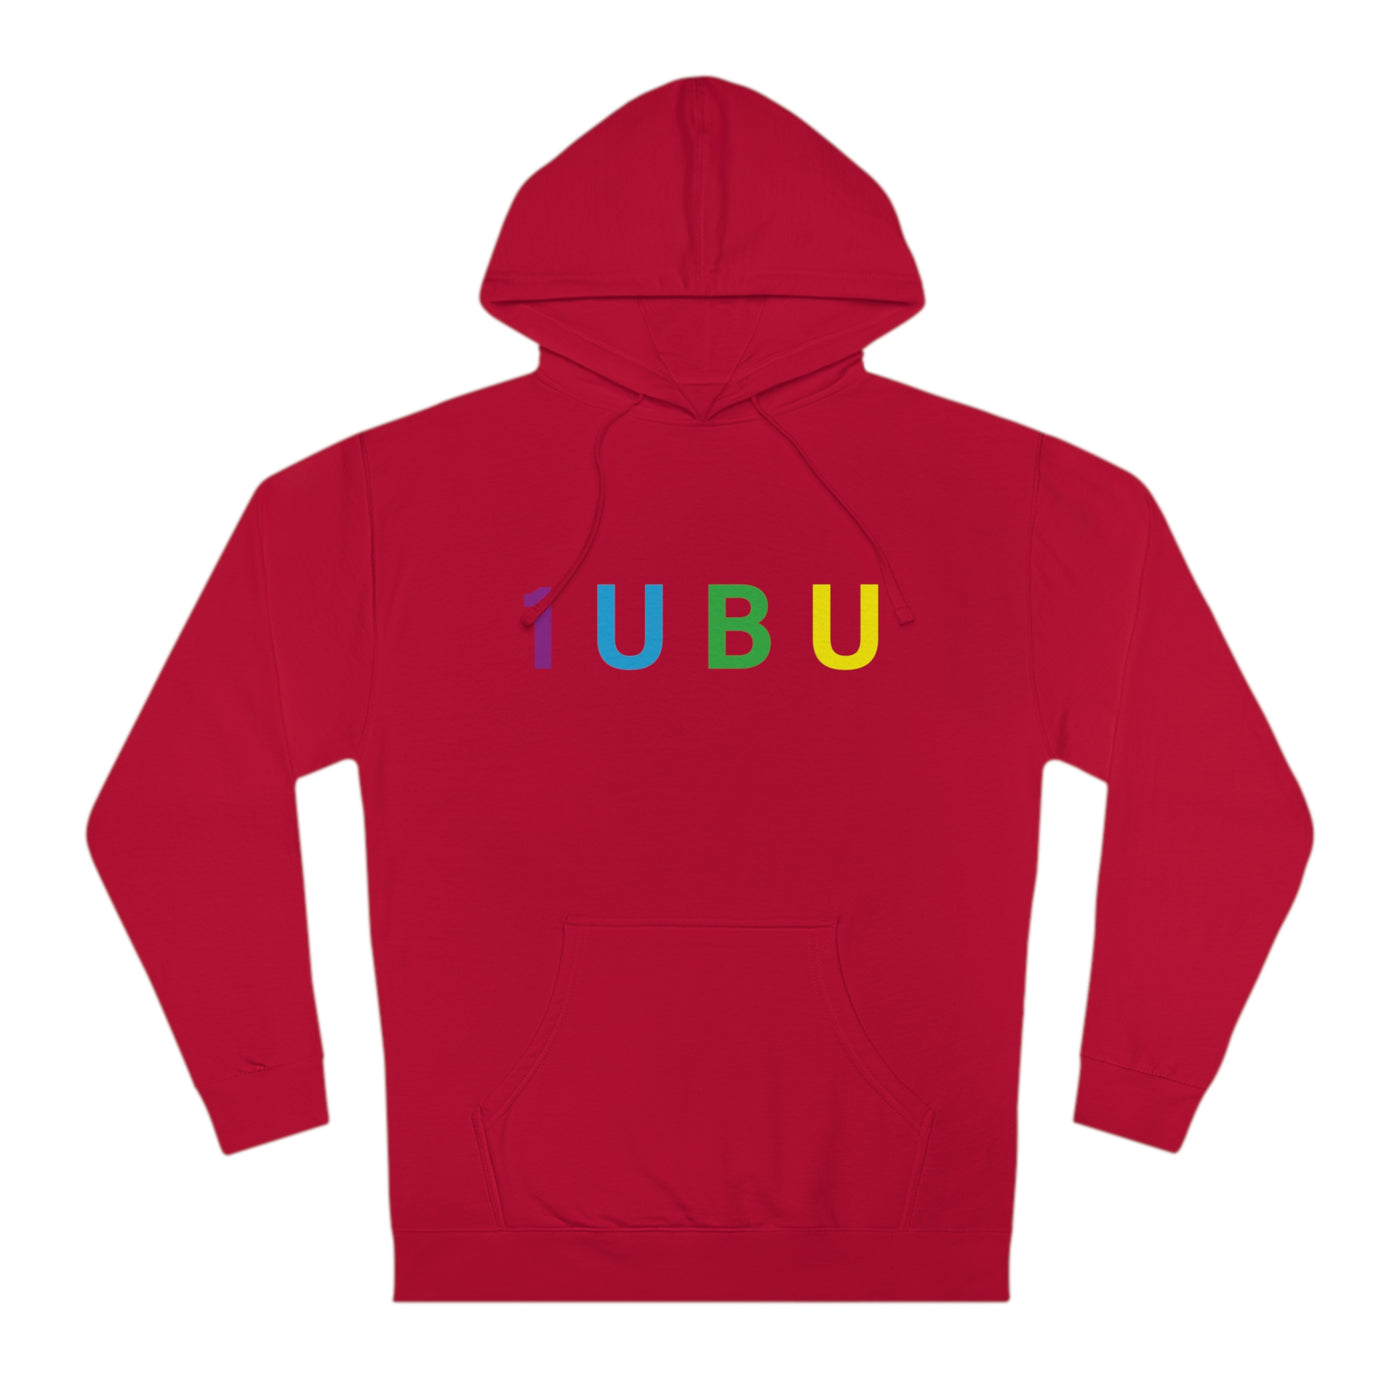 Unisex Hooded Sweatshirt - Colorful Hoodie - 1UBU Hoodie